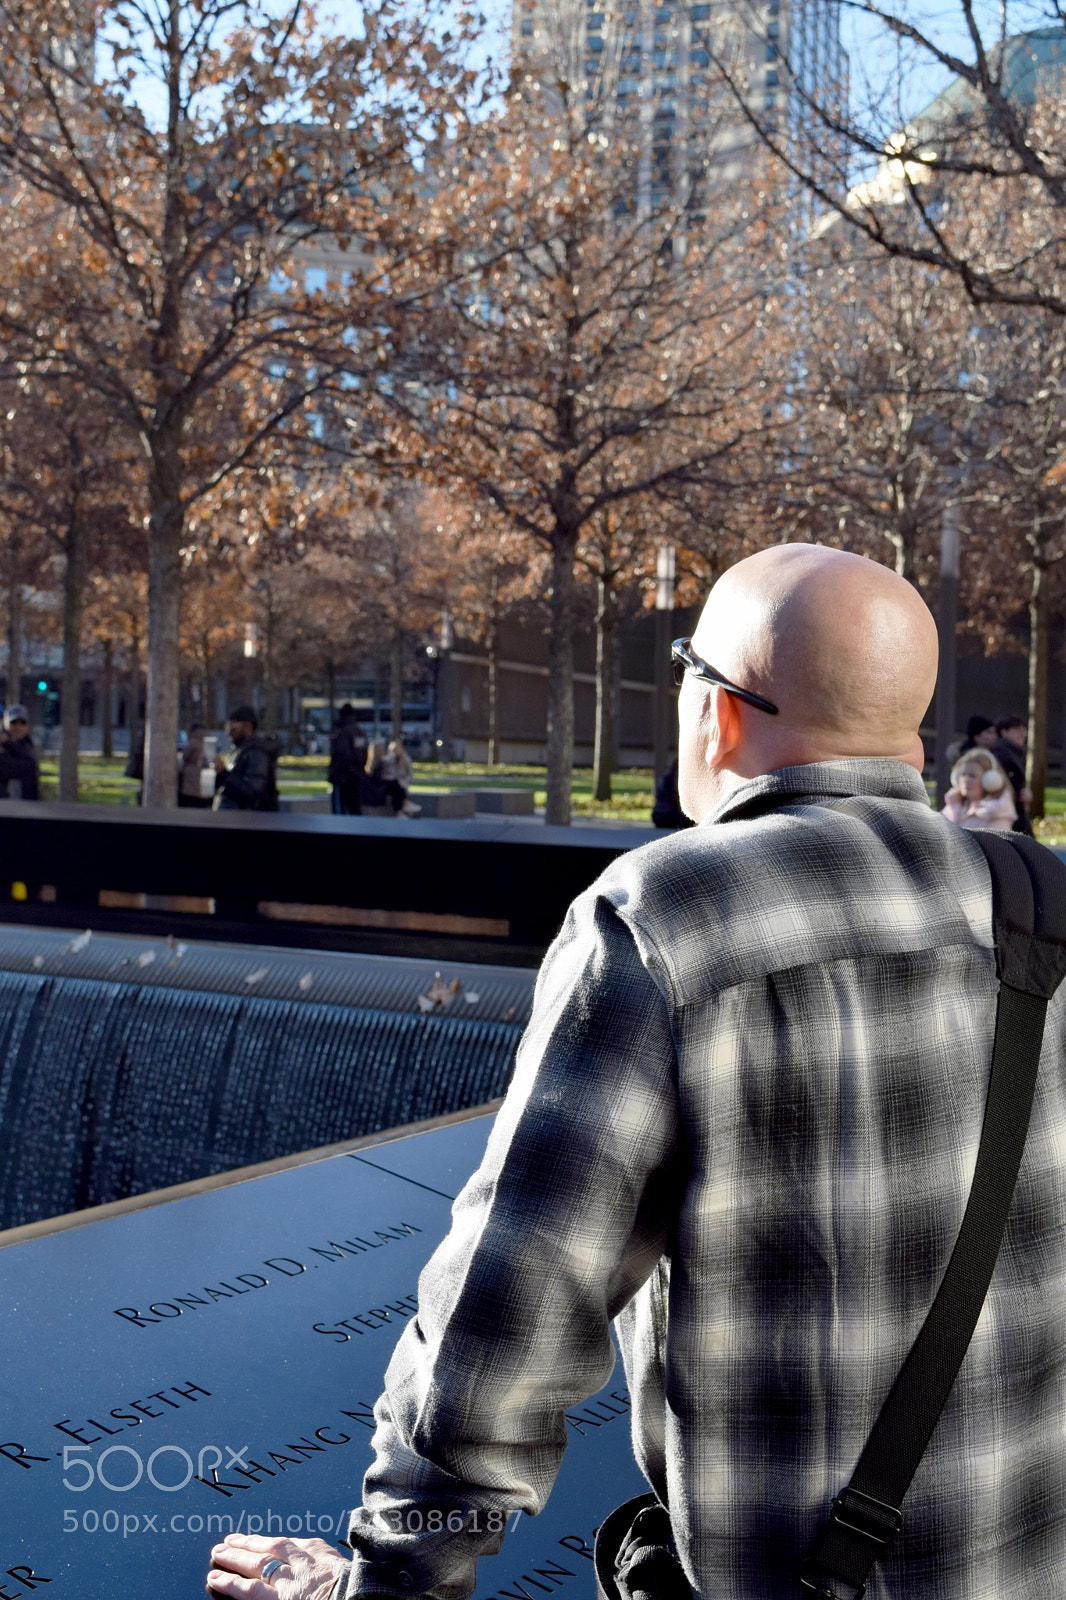 Nikon D3300 sample photo. 9/11 memorial reflection photography